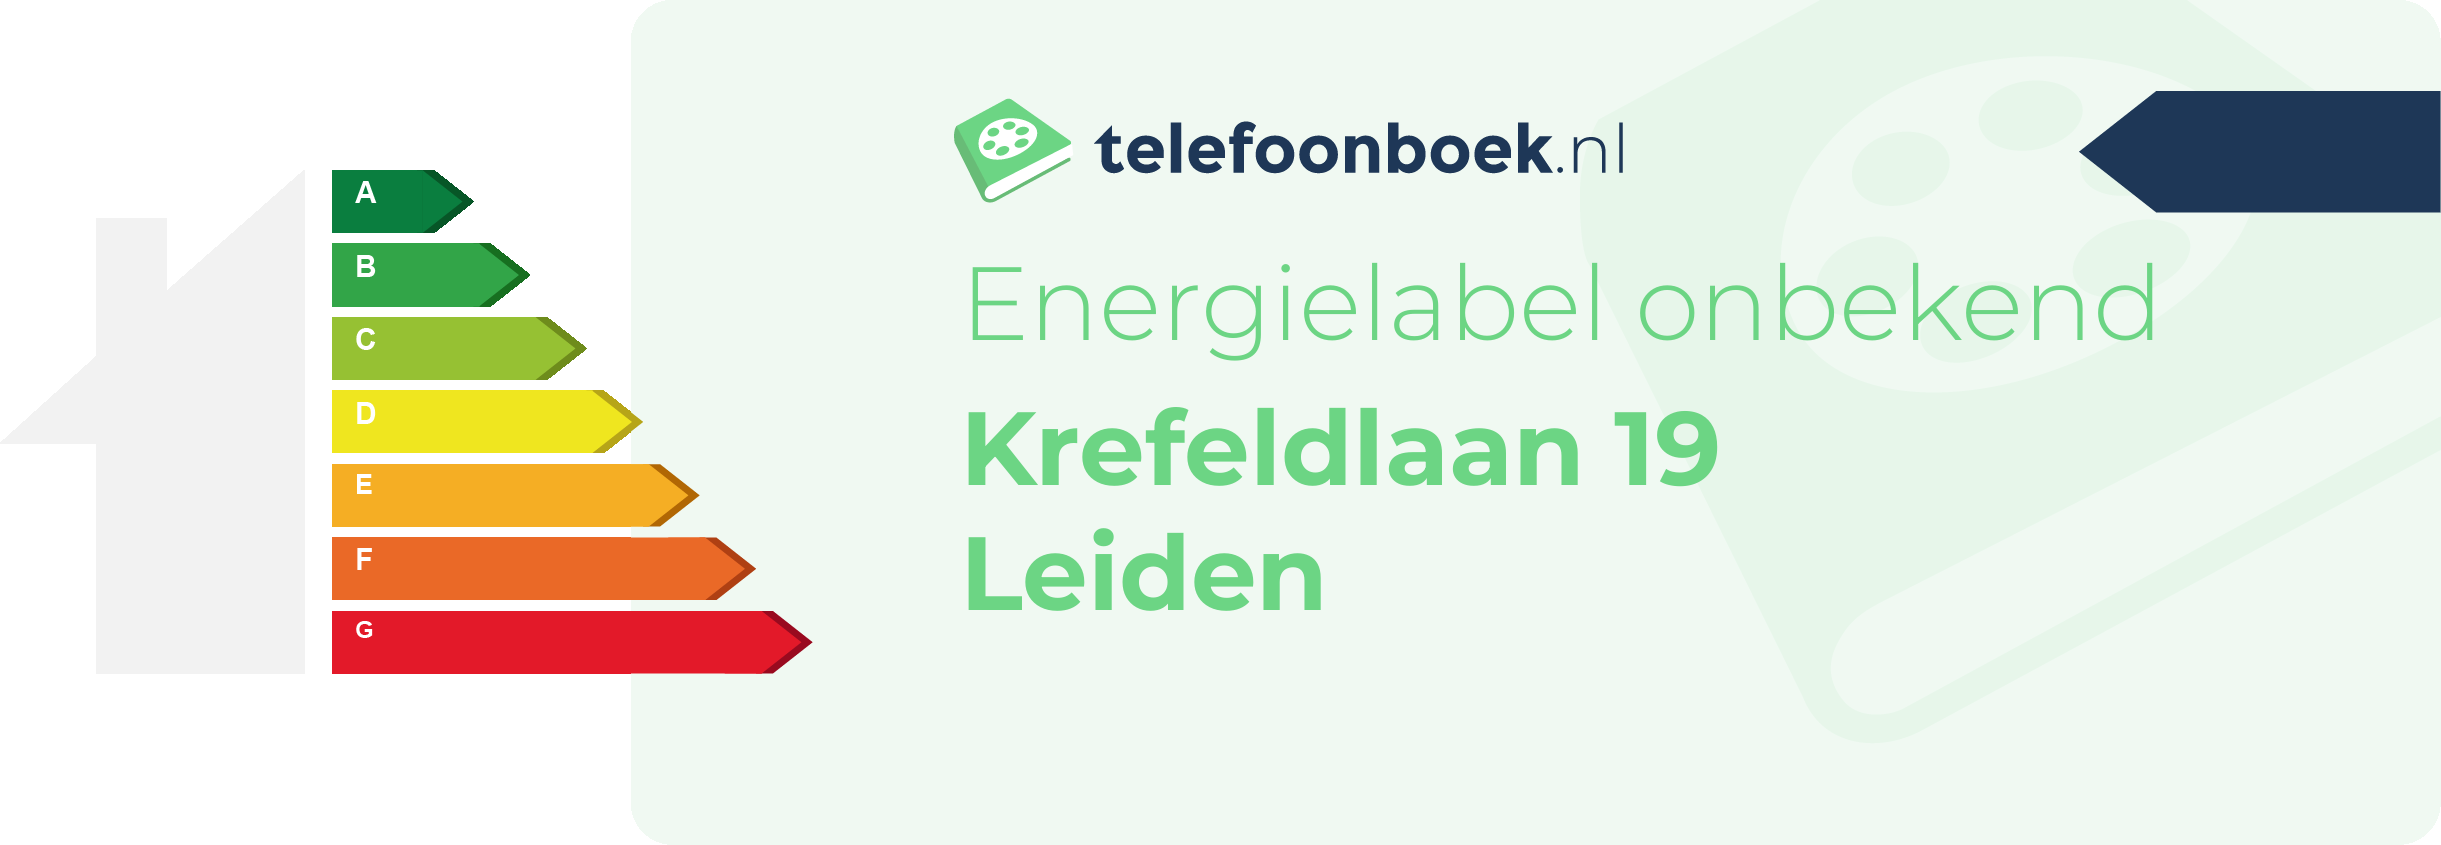 Energielabel Krefeldlaan 19 Leiden